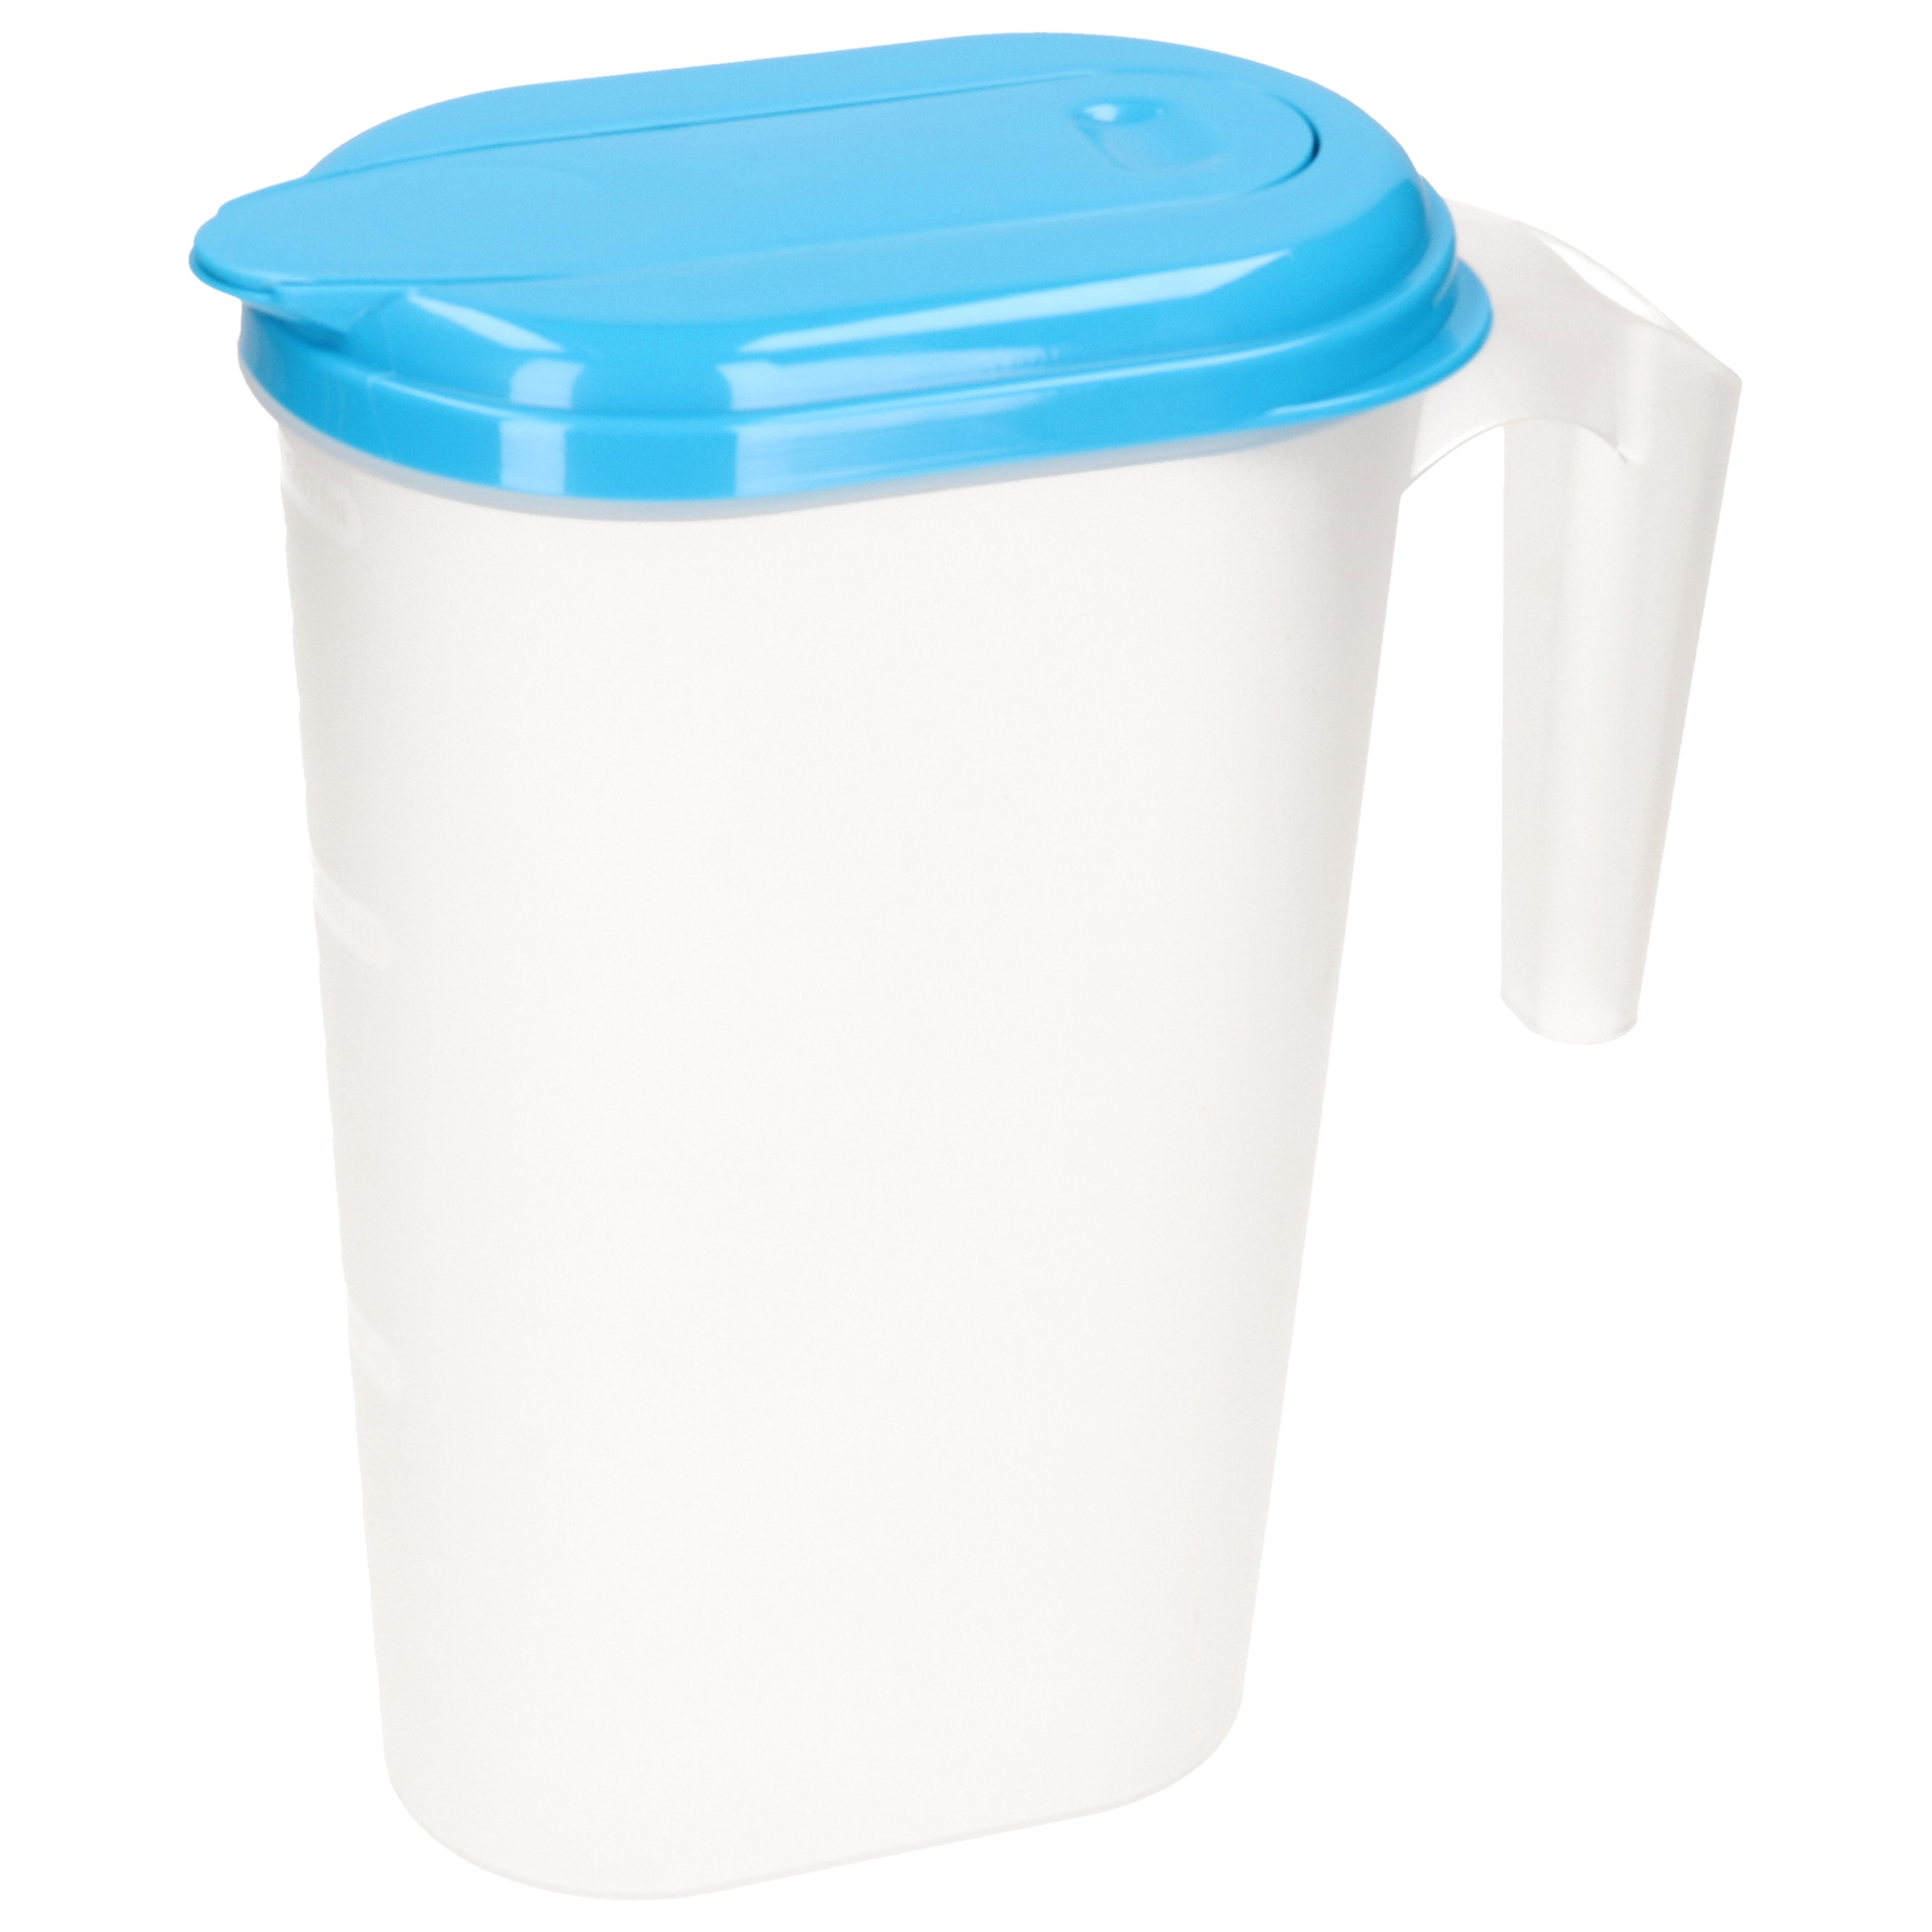 PlasticForte Waterkan/sapkan transparant/blauw met deksel 1.6 liter kunststof -